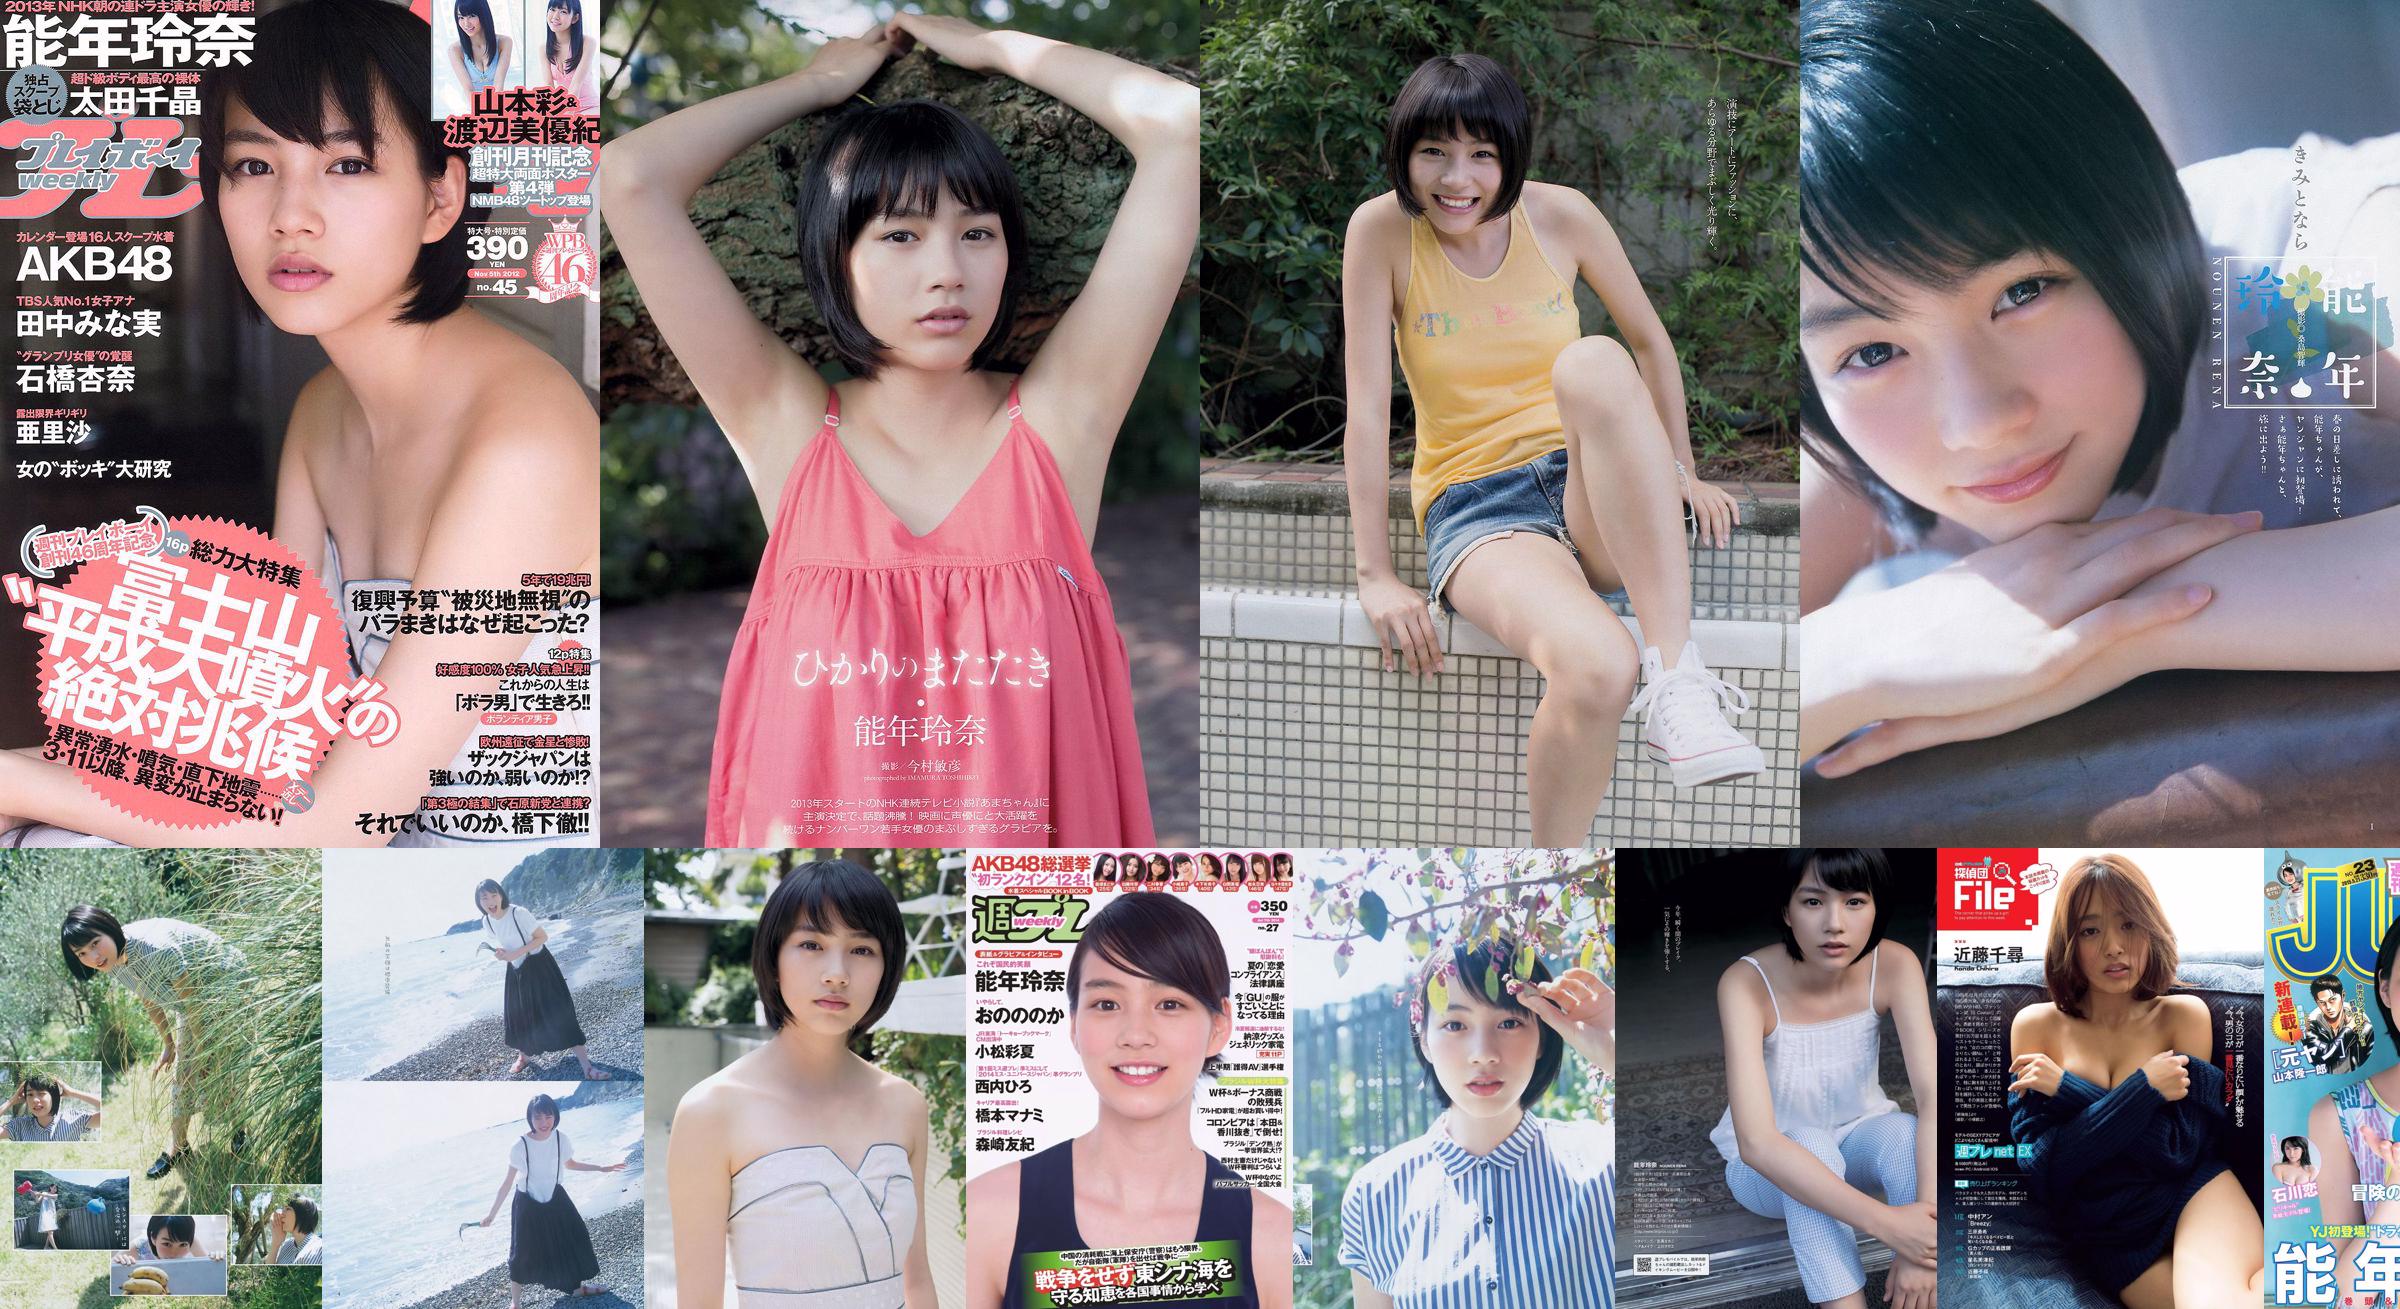 Rena Nonen AKB48 Anna Ishibashi Arisa Ili Chiaki Ota [Weekly Playboy] 2012 No.45 รูปภาพ No.61524b หน้า 2